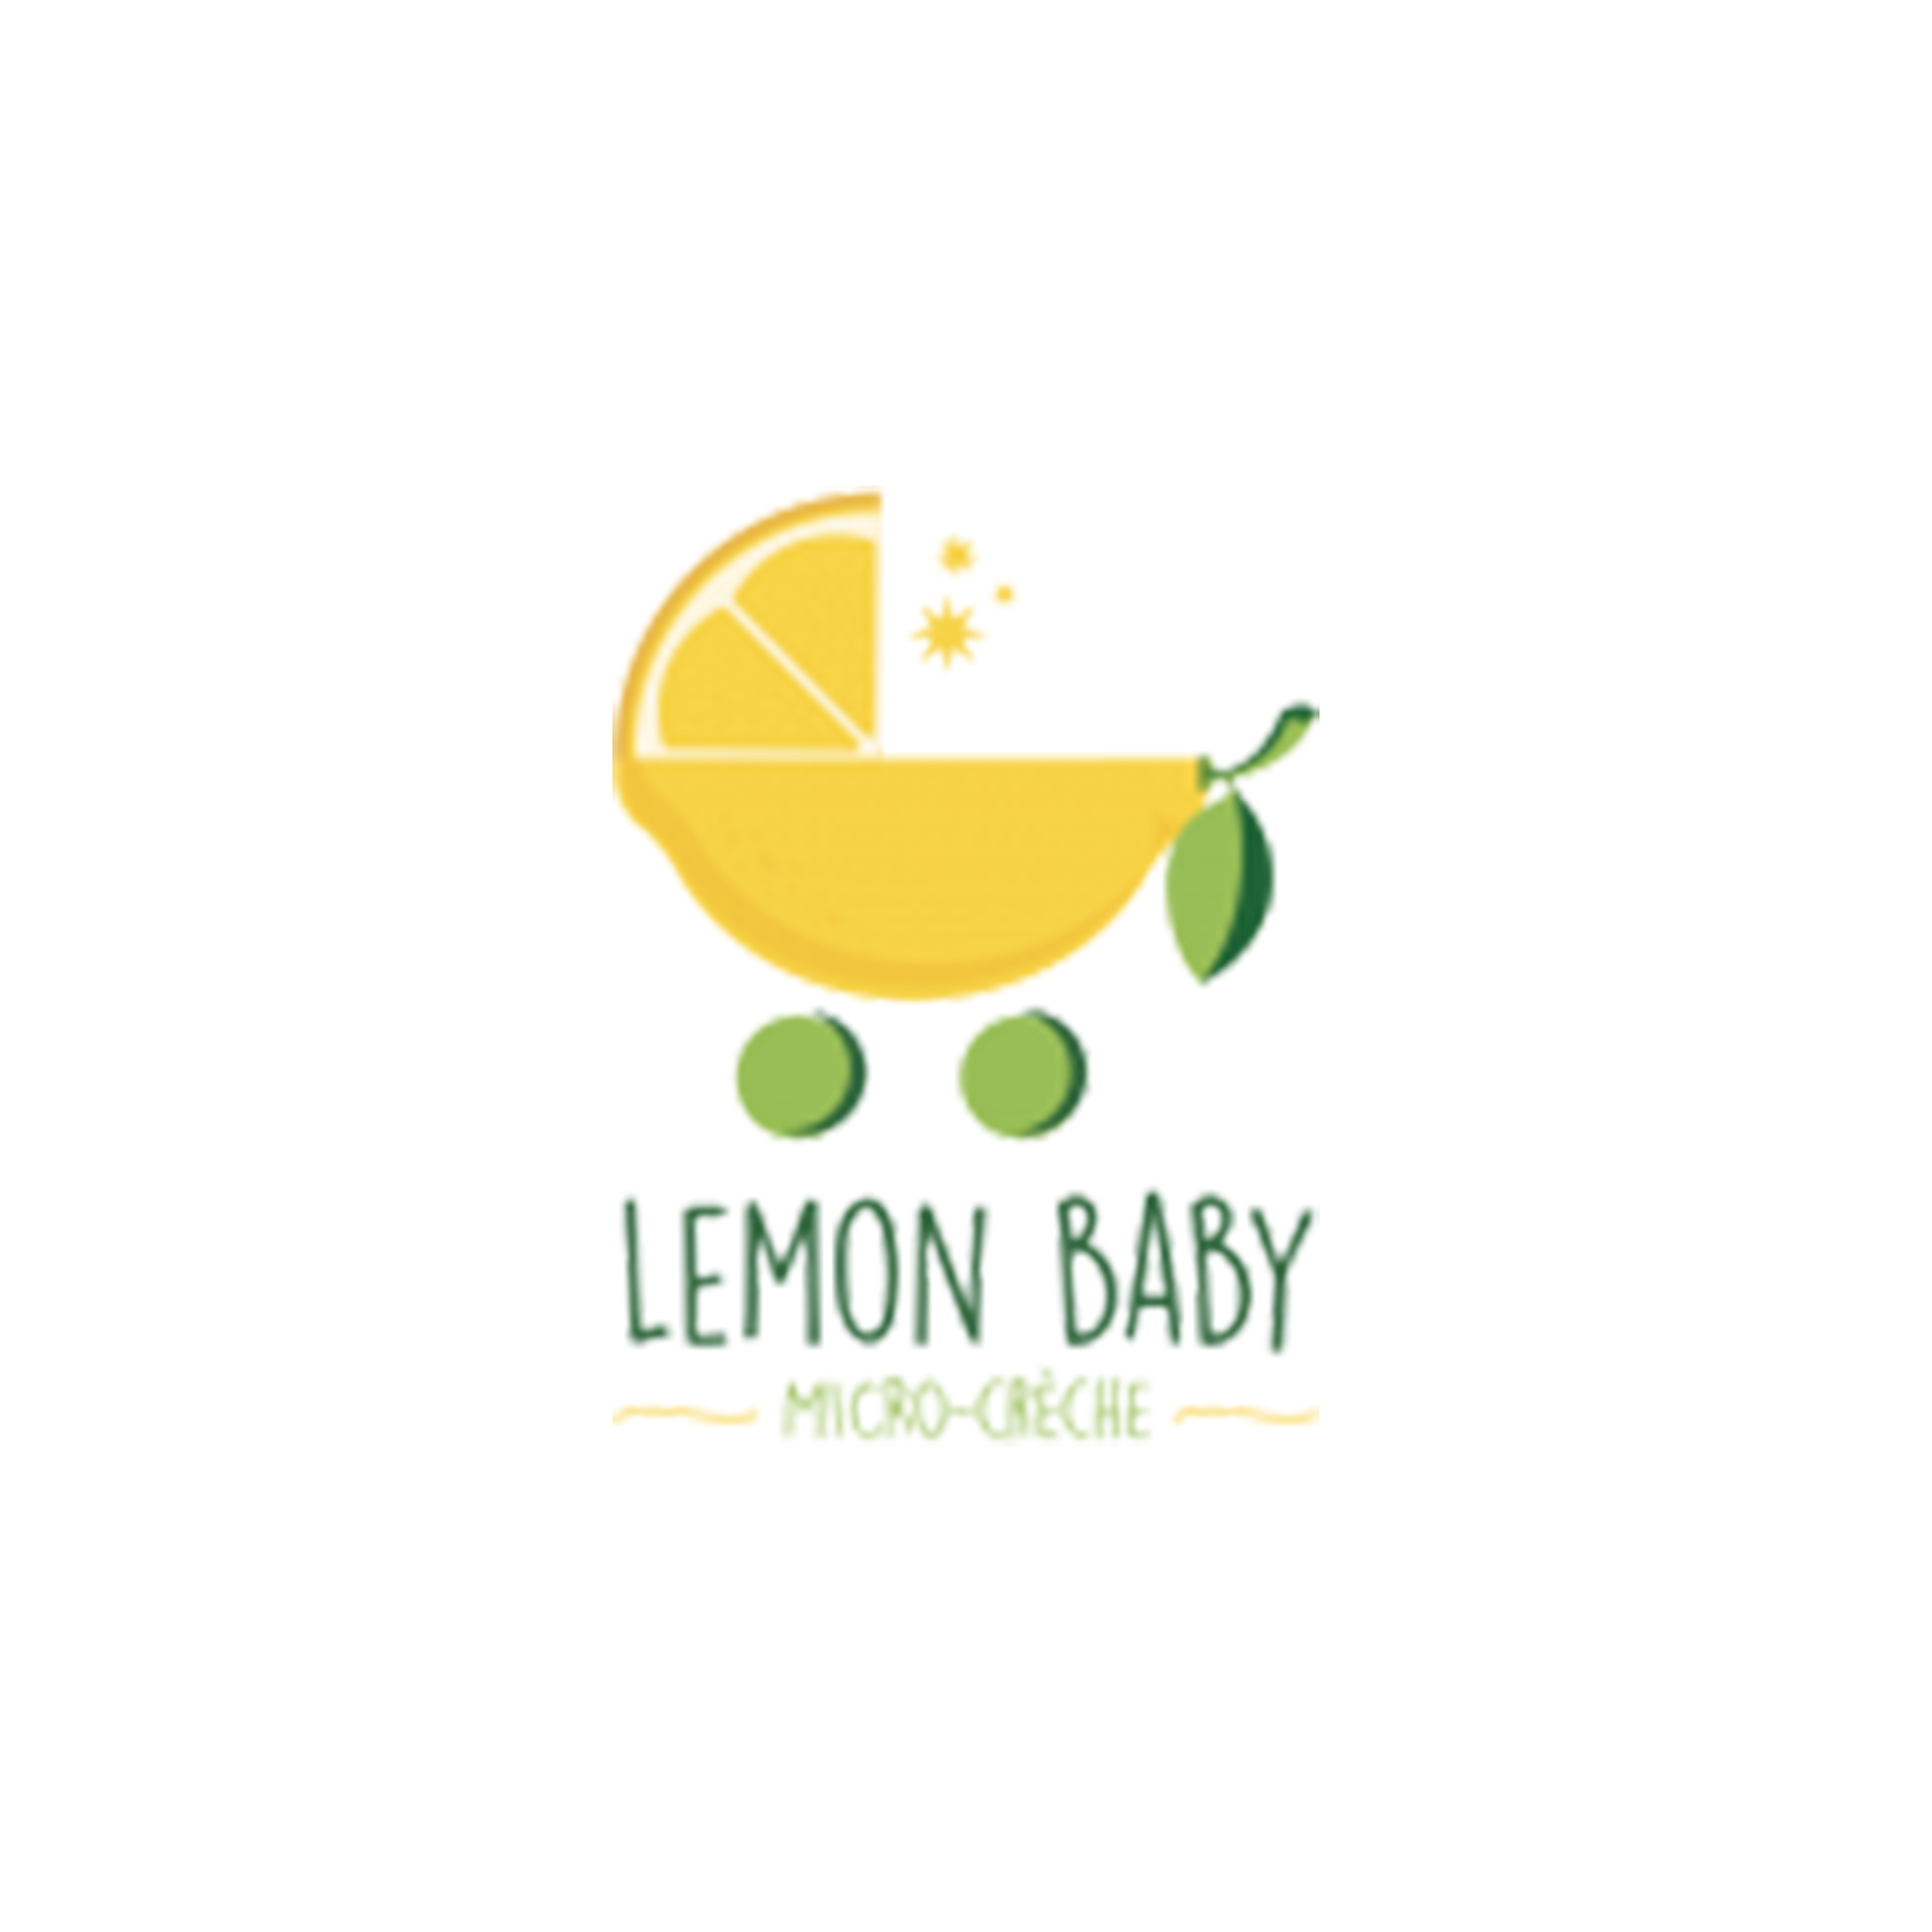 https://lemon-baby.fr/